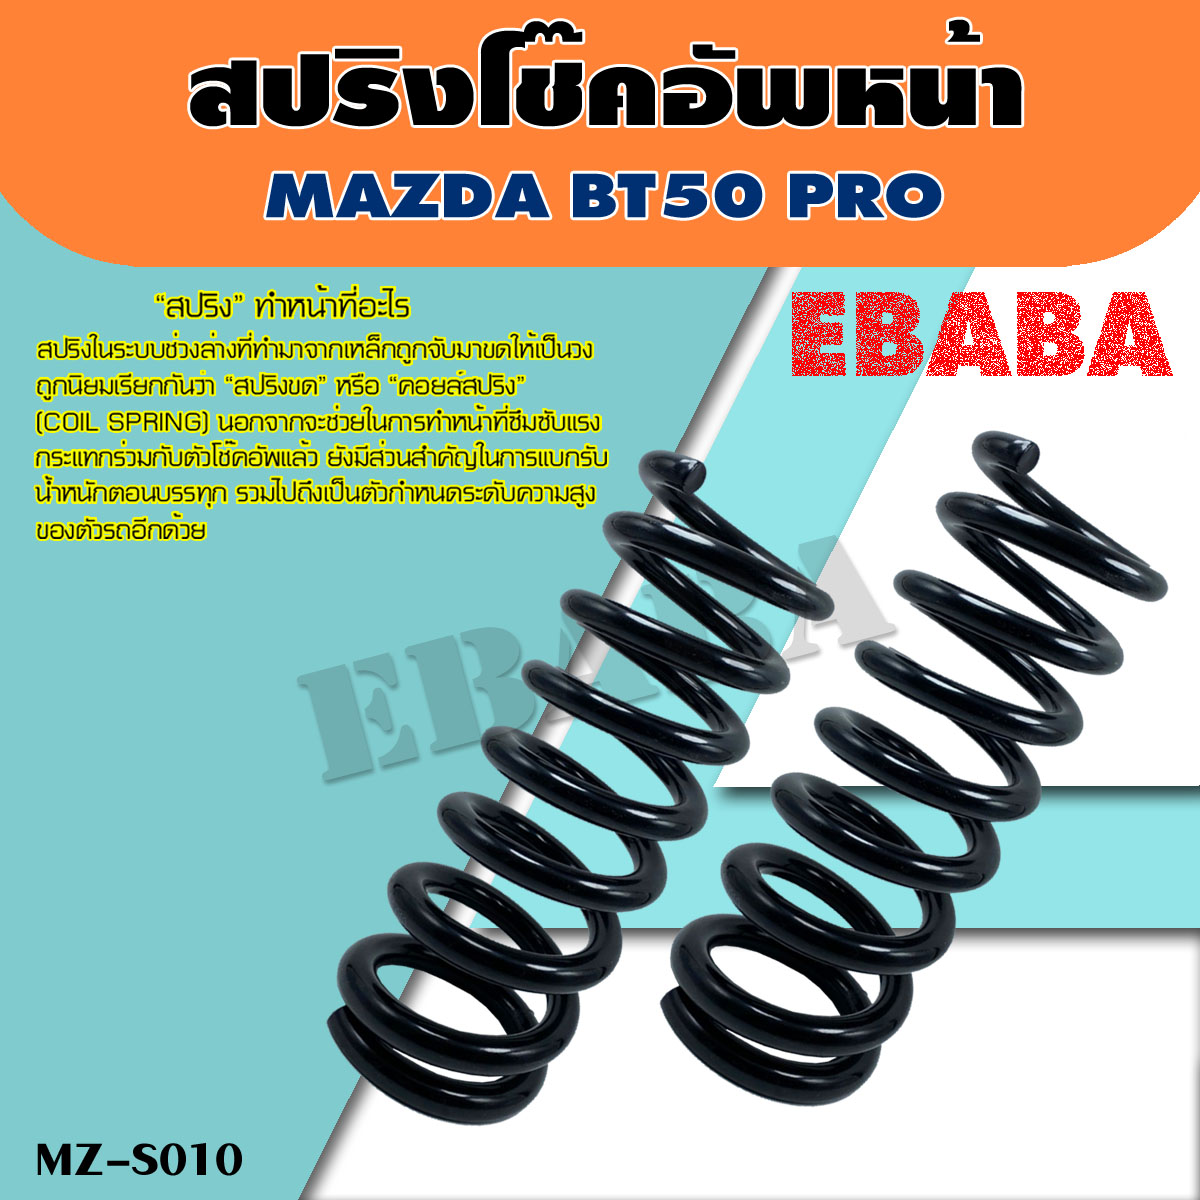 สปริง สปริงโช้คอัพ หน้า MAZDA BT50 PRO ( รหัสสินค้า MZ-S010 ) ( 1คู่ ) ยี่ห้อ NDK